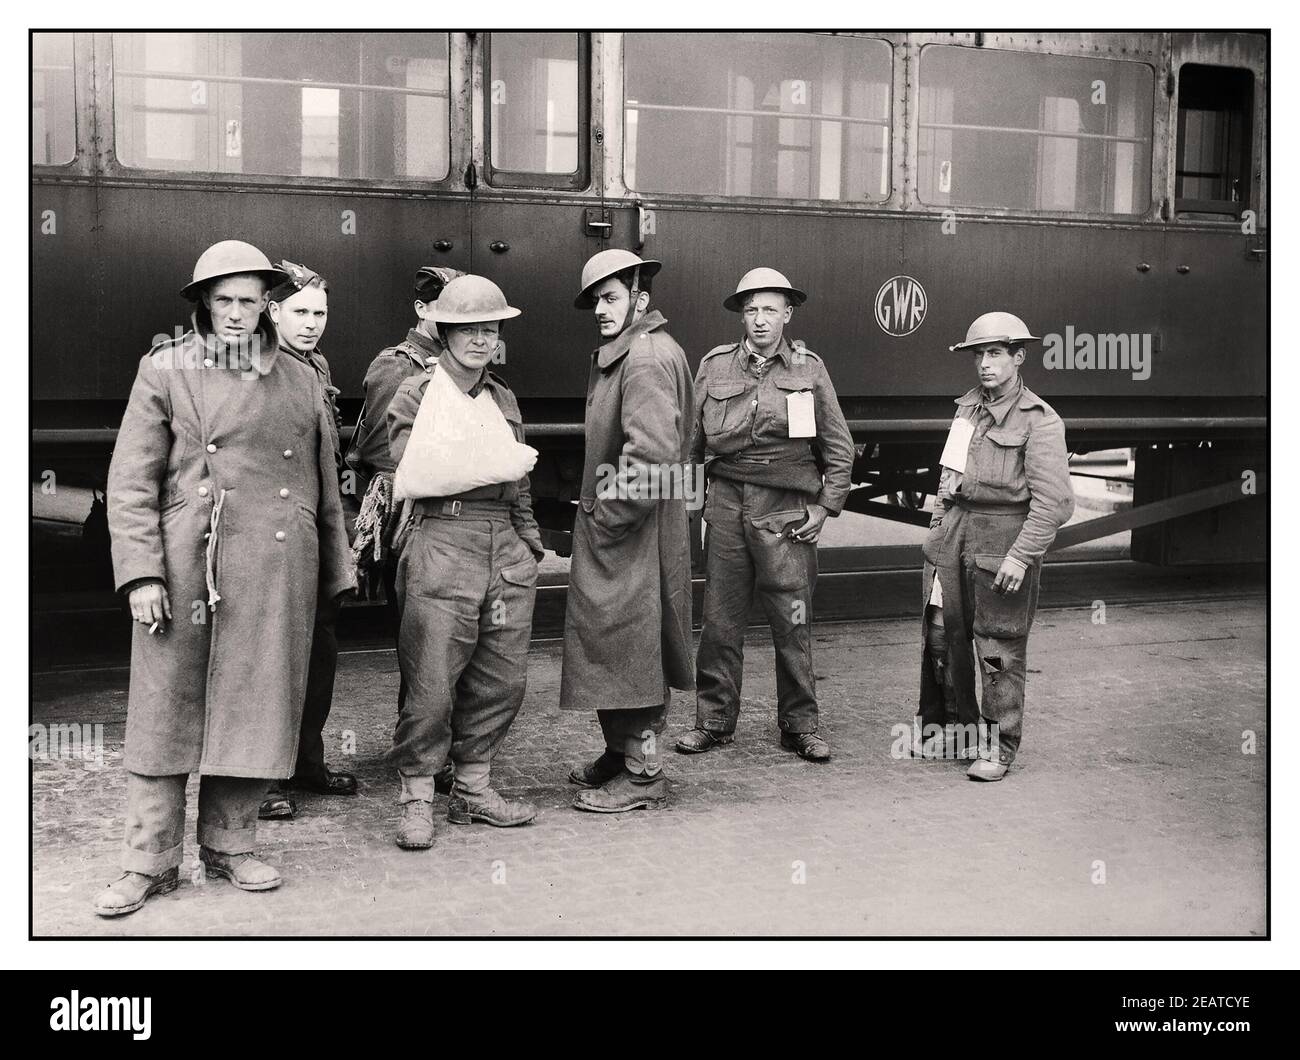 LES TROUPES DE DUNKERQUE le groupe de la Seconde Guerre mondiale de troupes britanniques 'marchant blessées' évacuées de Dunkerque, devant un wagon de chemin de fer du GWR à Douvres, le 31 mai 1940. Deuxième Guerre mondiale Banque D'Images